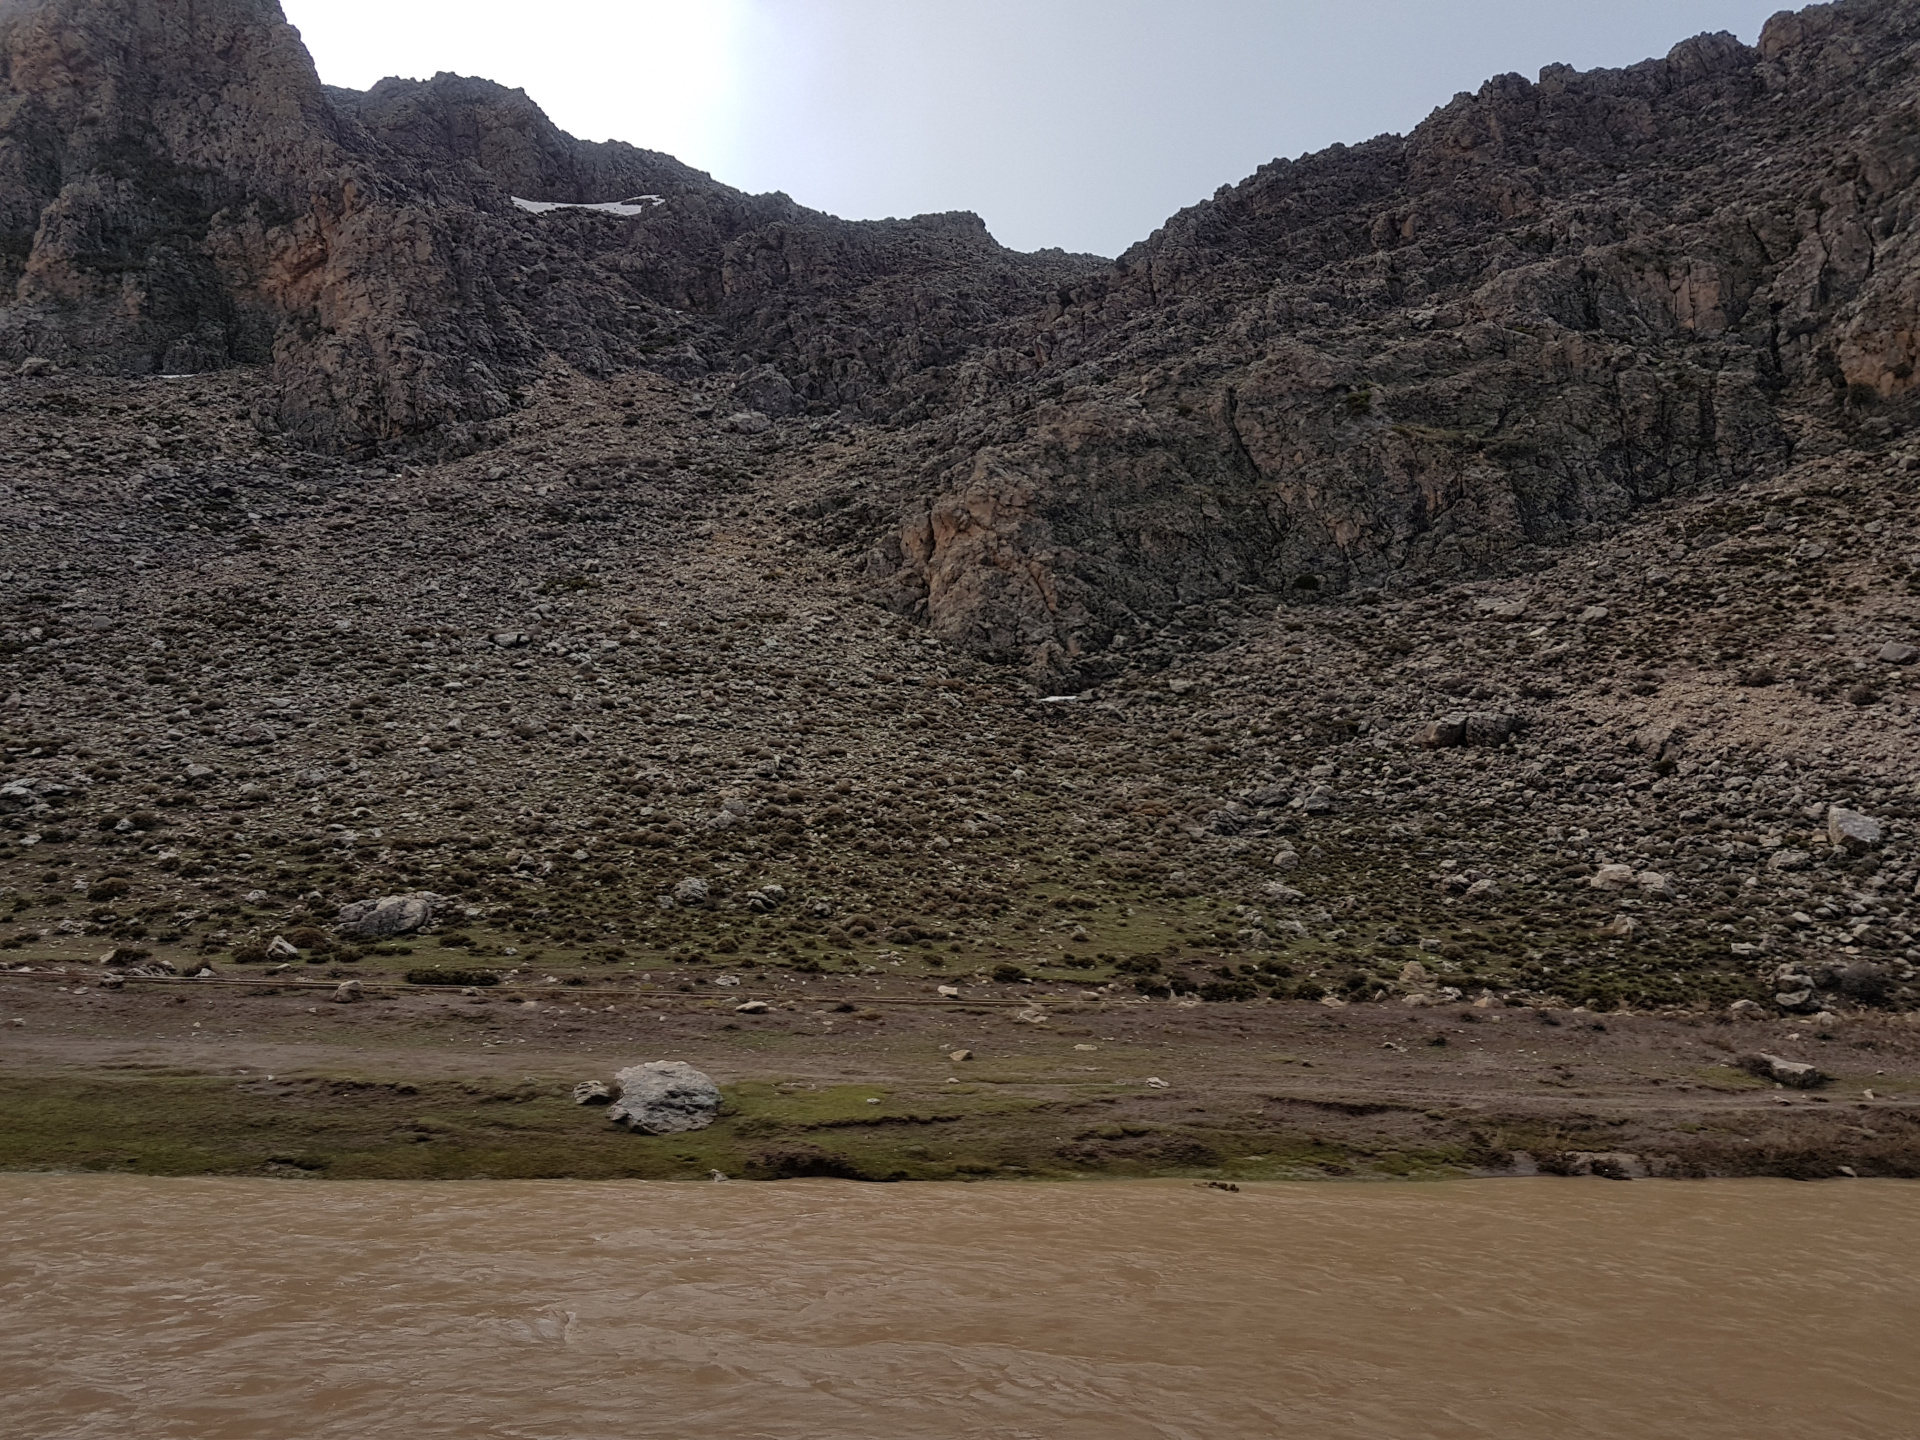 20180308-120637-Oued_Guigou_River-SJ.jpg